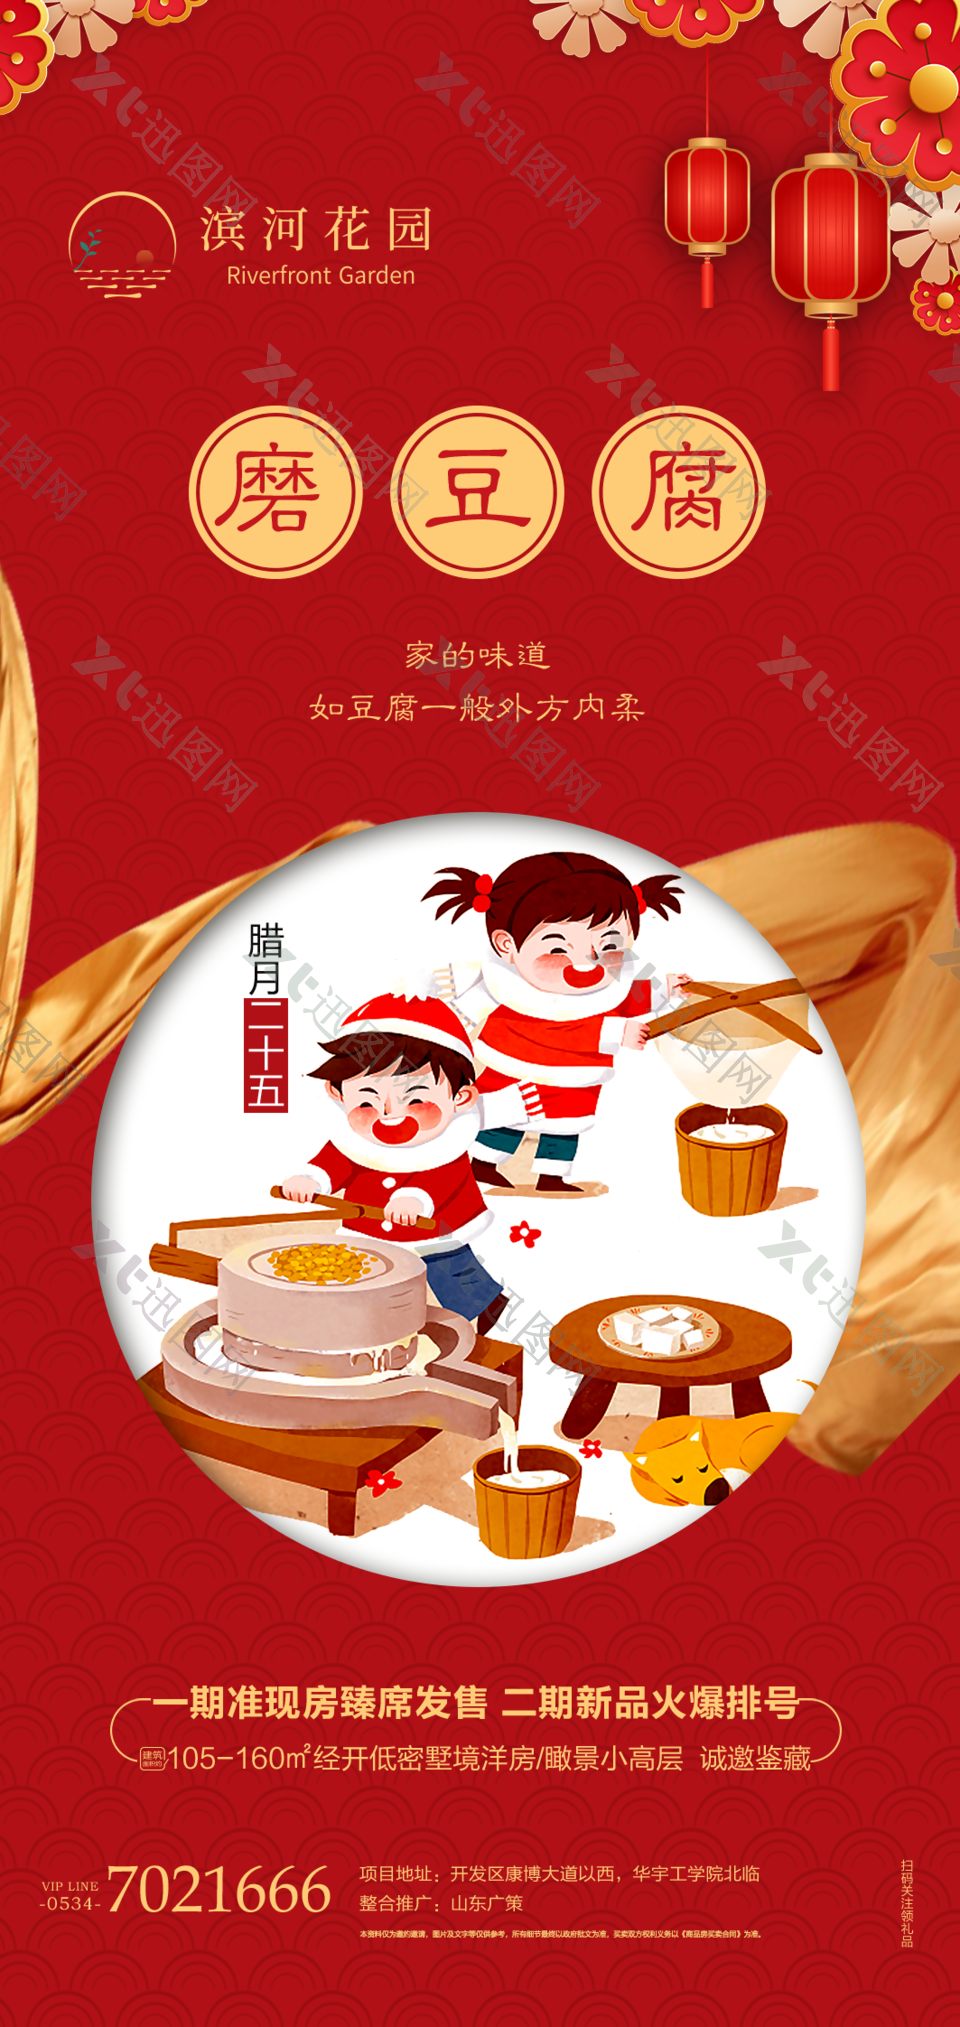 年俗磨豆腐新年刷屏海报设计